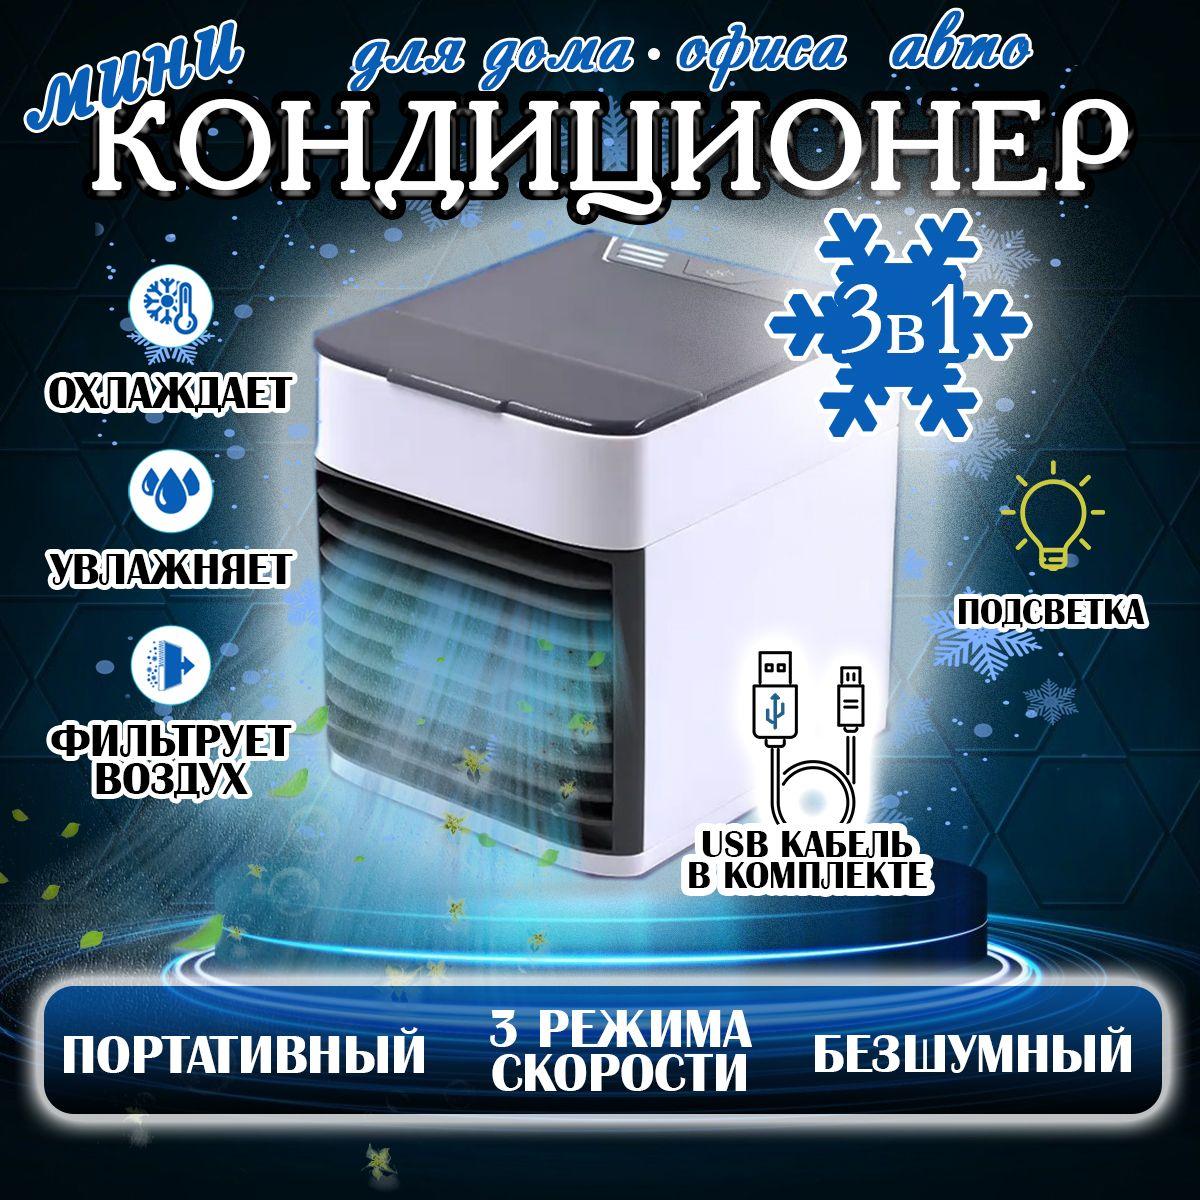 Lave'ra | Мини настольный кондиционер, охладитель воздуха с LED подсветкой 3 скорости, охладитель персональный, увлажнитель, ночник, вентилятор портативный arctic air